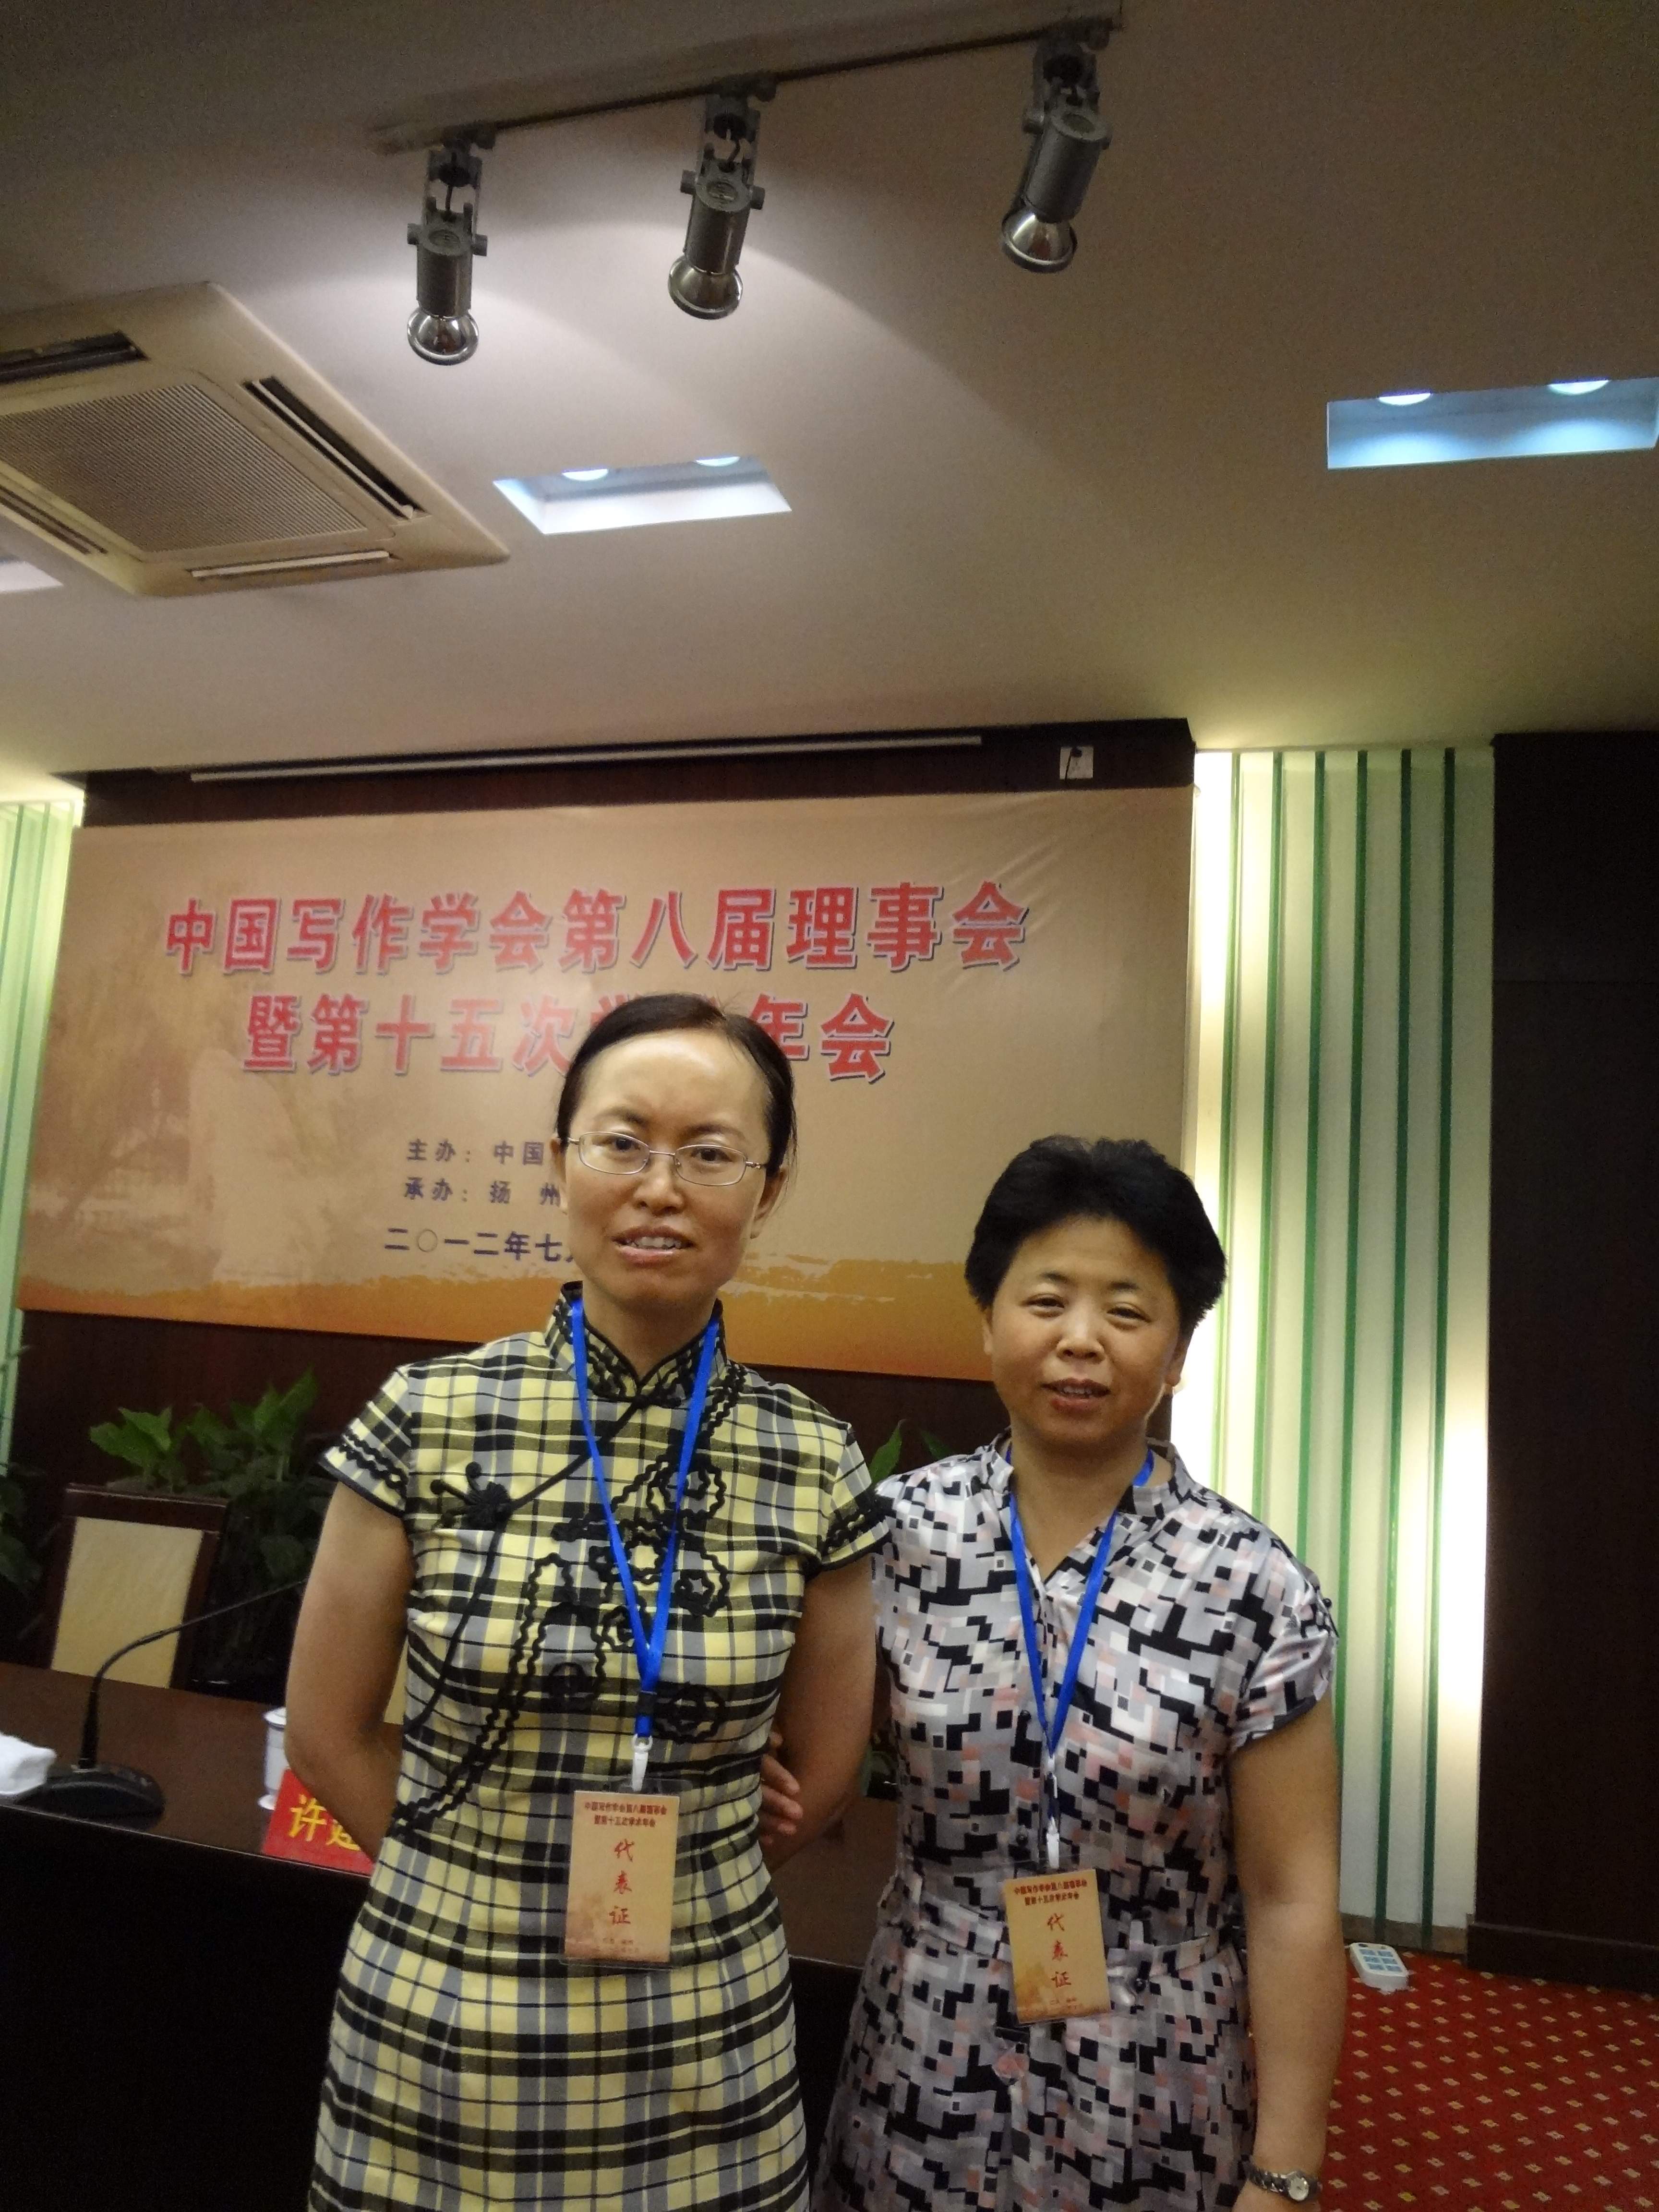 张爱玲副教授（左），任雅玲教授（右）参加中国写作学会第八届理事会暨第十五届年会。